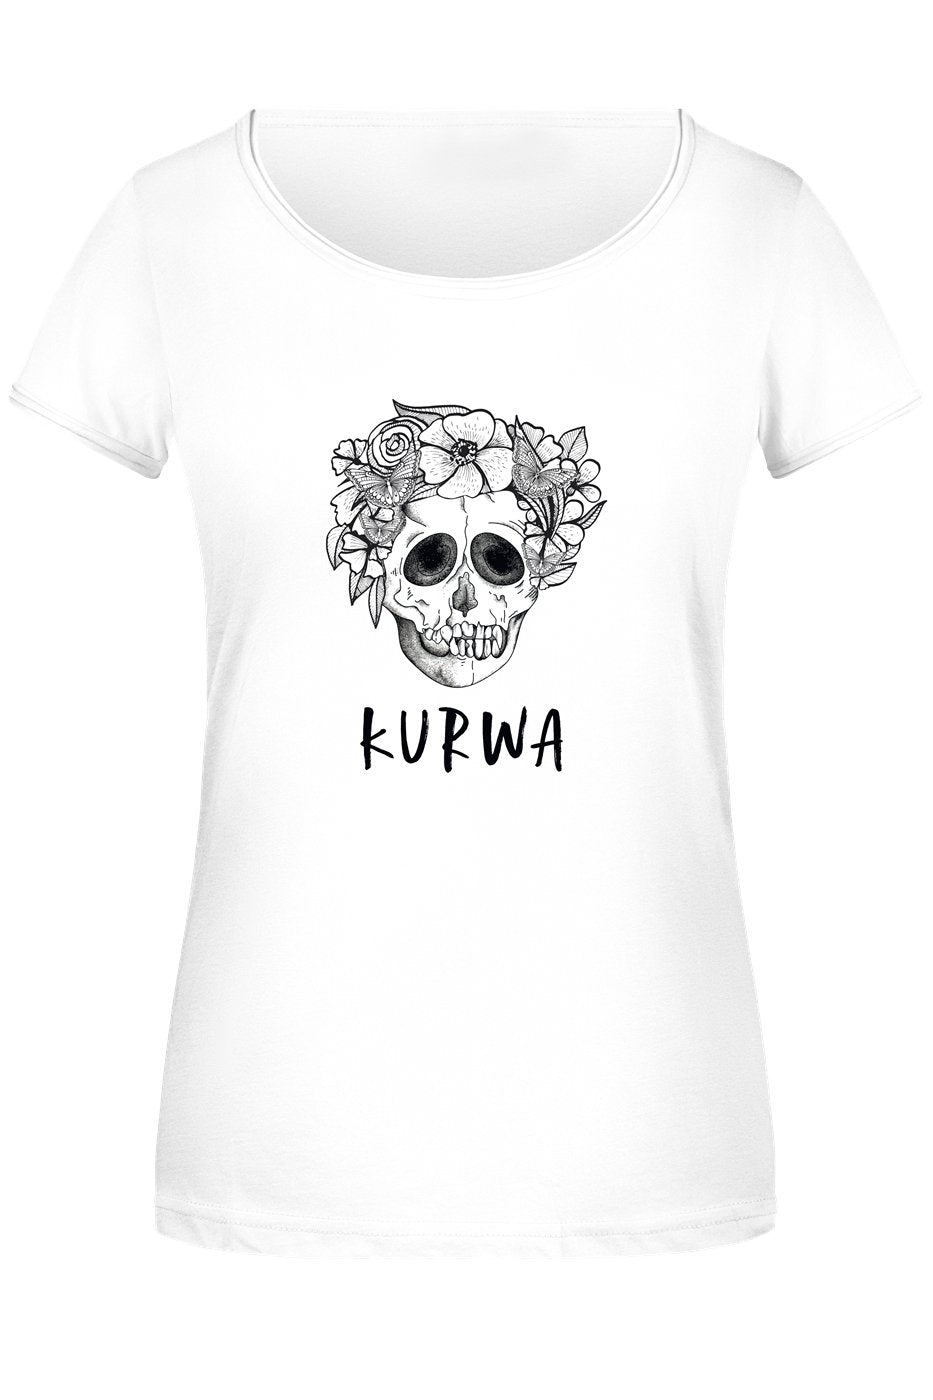 Bild: T-Shirt Damen - Kurwa - Totenkopf Geschenkidee